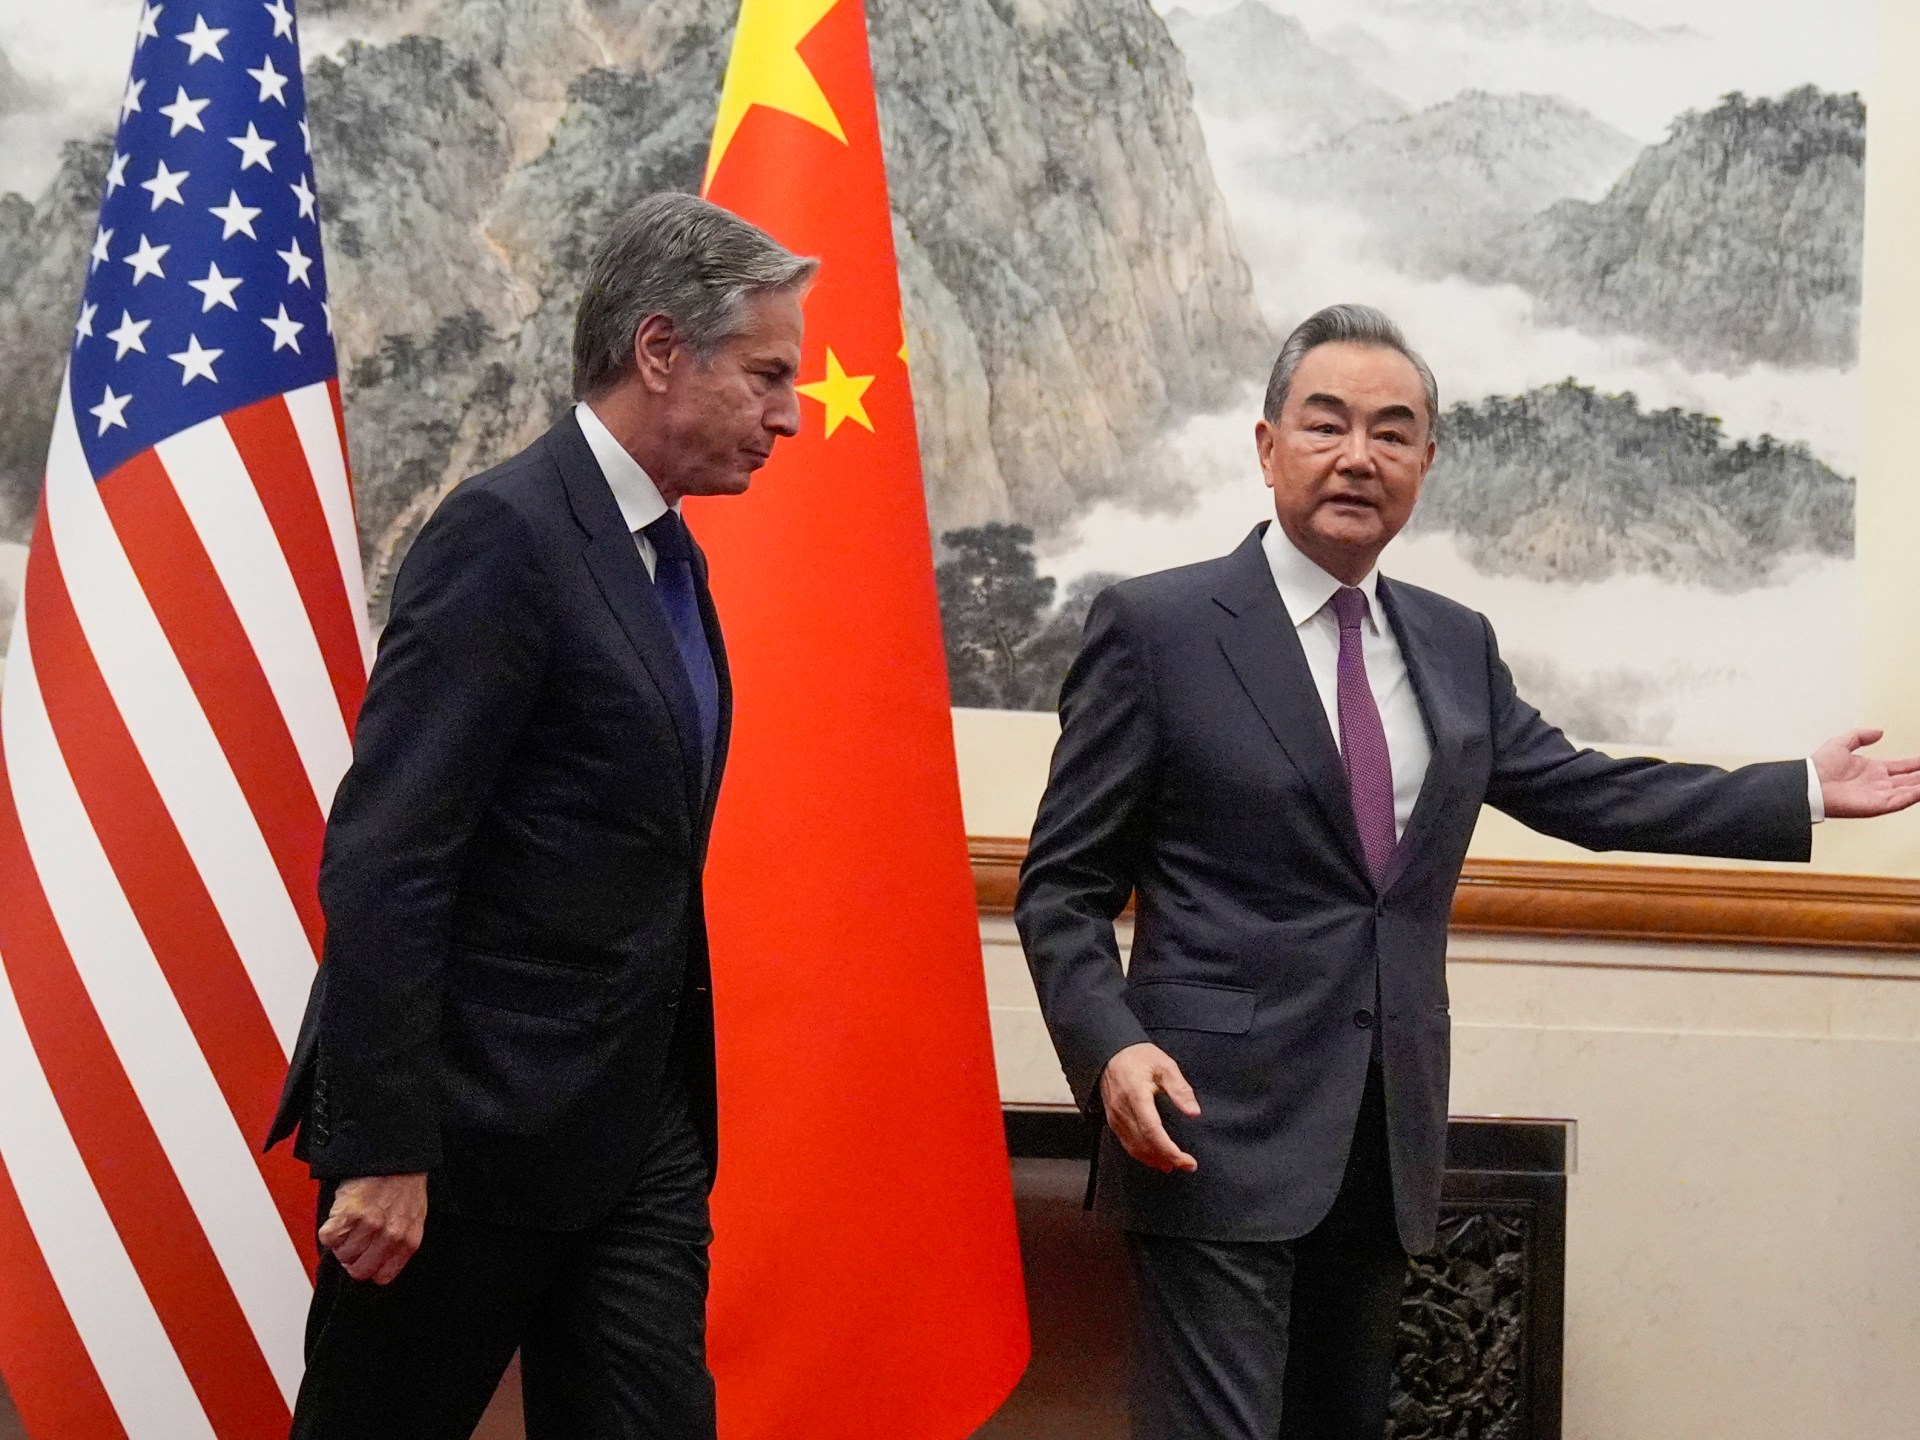 محادثات صينية أميركية في بكين تبحث الخلافات بين البلدين | أخبار – البوكس نيوز